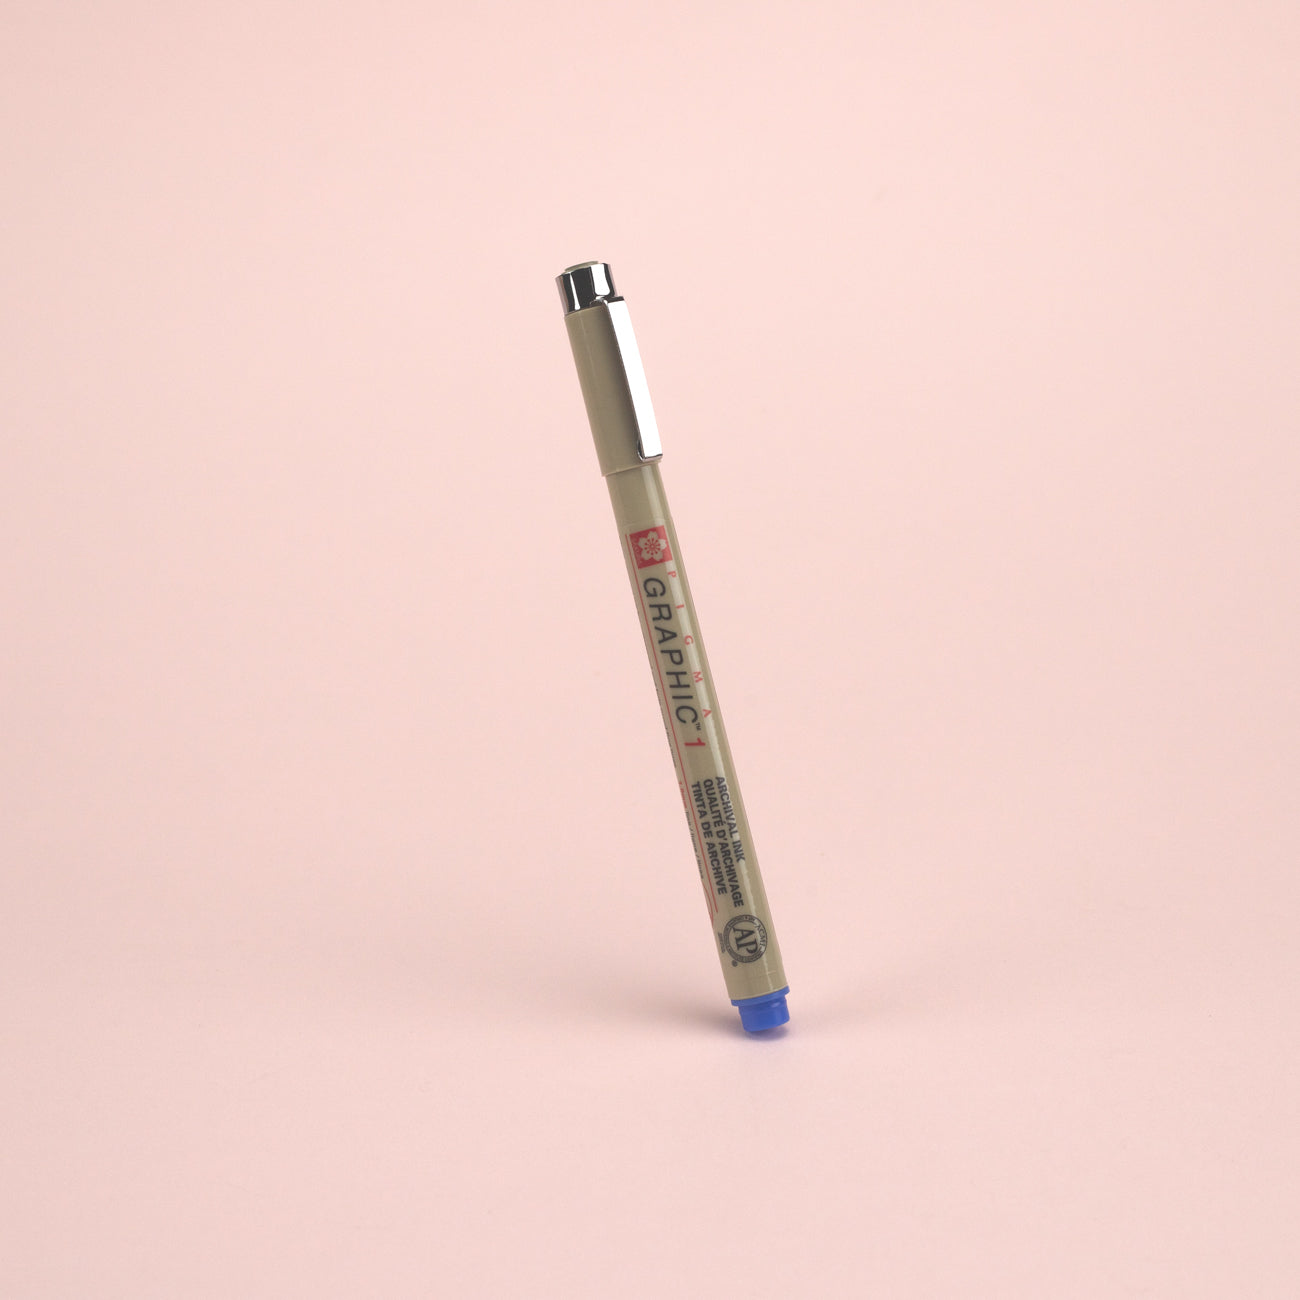 Sakura Pigma Graphic Pen - Size 1 - 1.0 mm - Blue